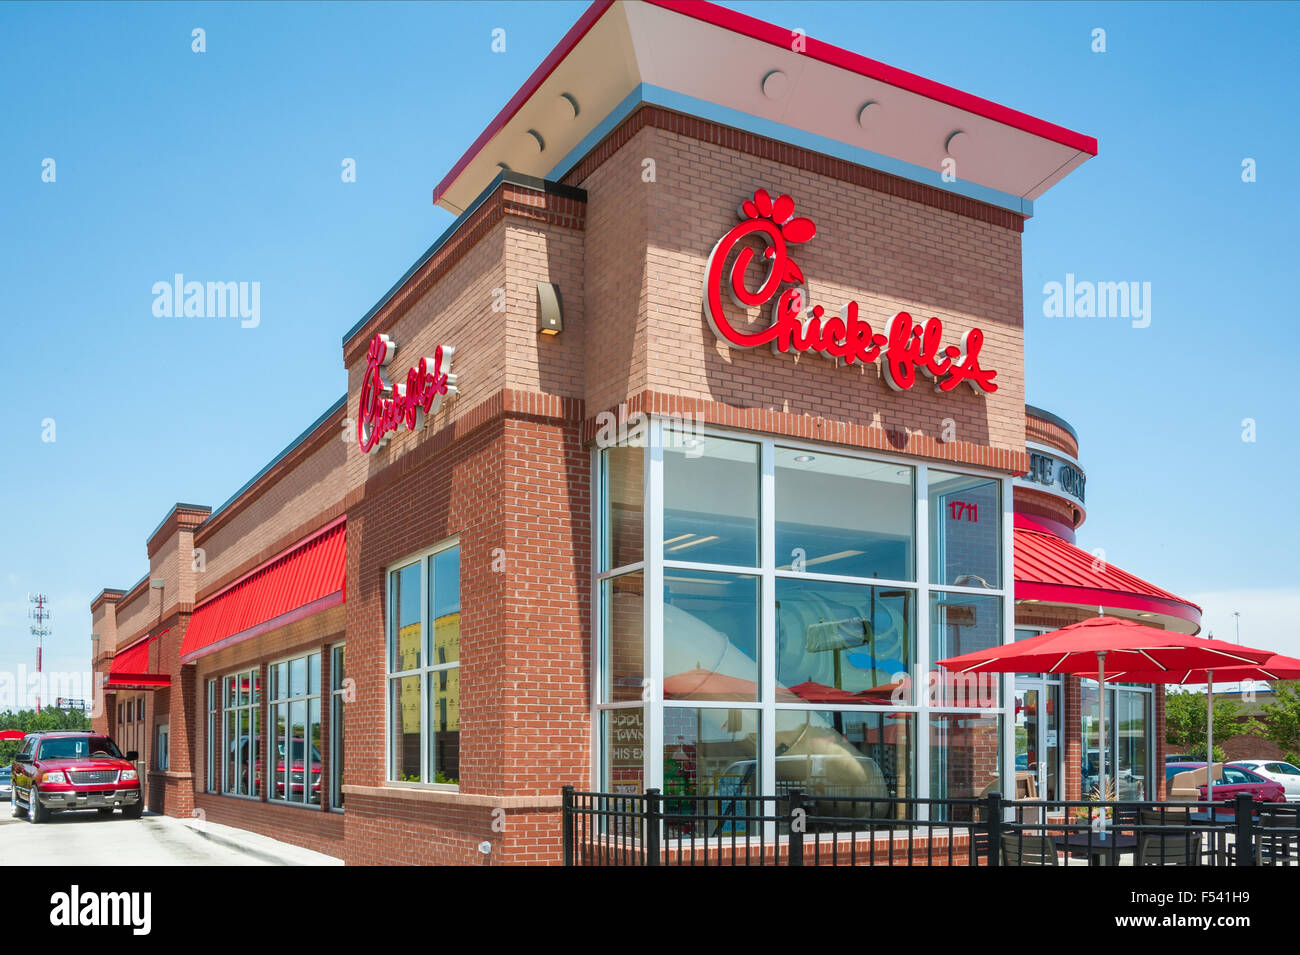 Chick-Fil-A ist Amerikas Top bewerteten Fast-Food-Kette, bekannt für seine  Chicken Sandwiches, südländische Gastfreundschaft und christliche Werte  Stockfotografie - Alamy